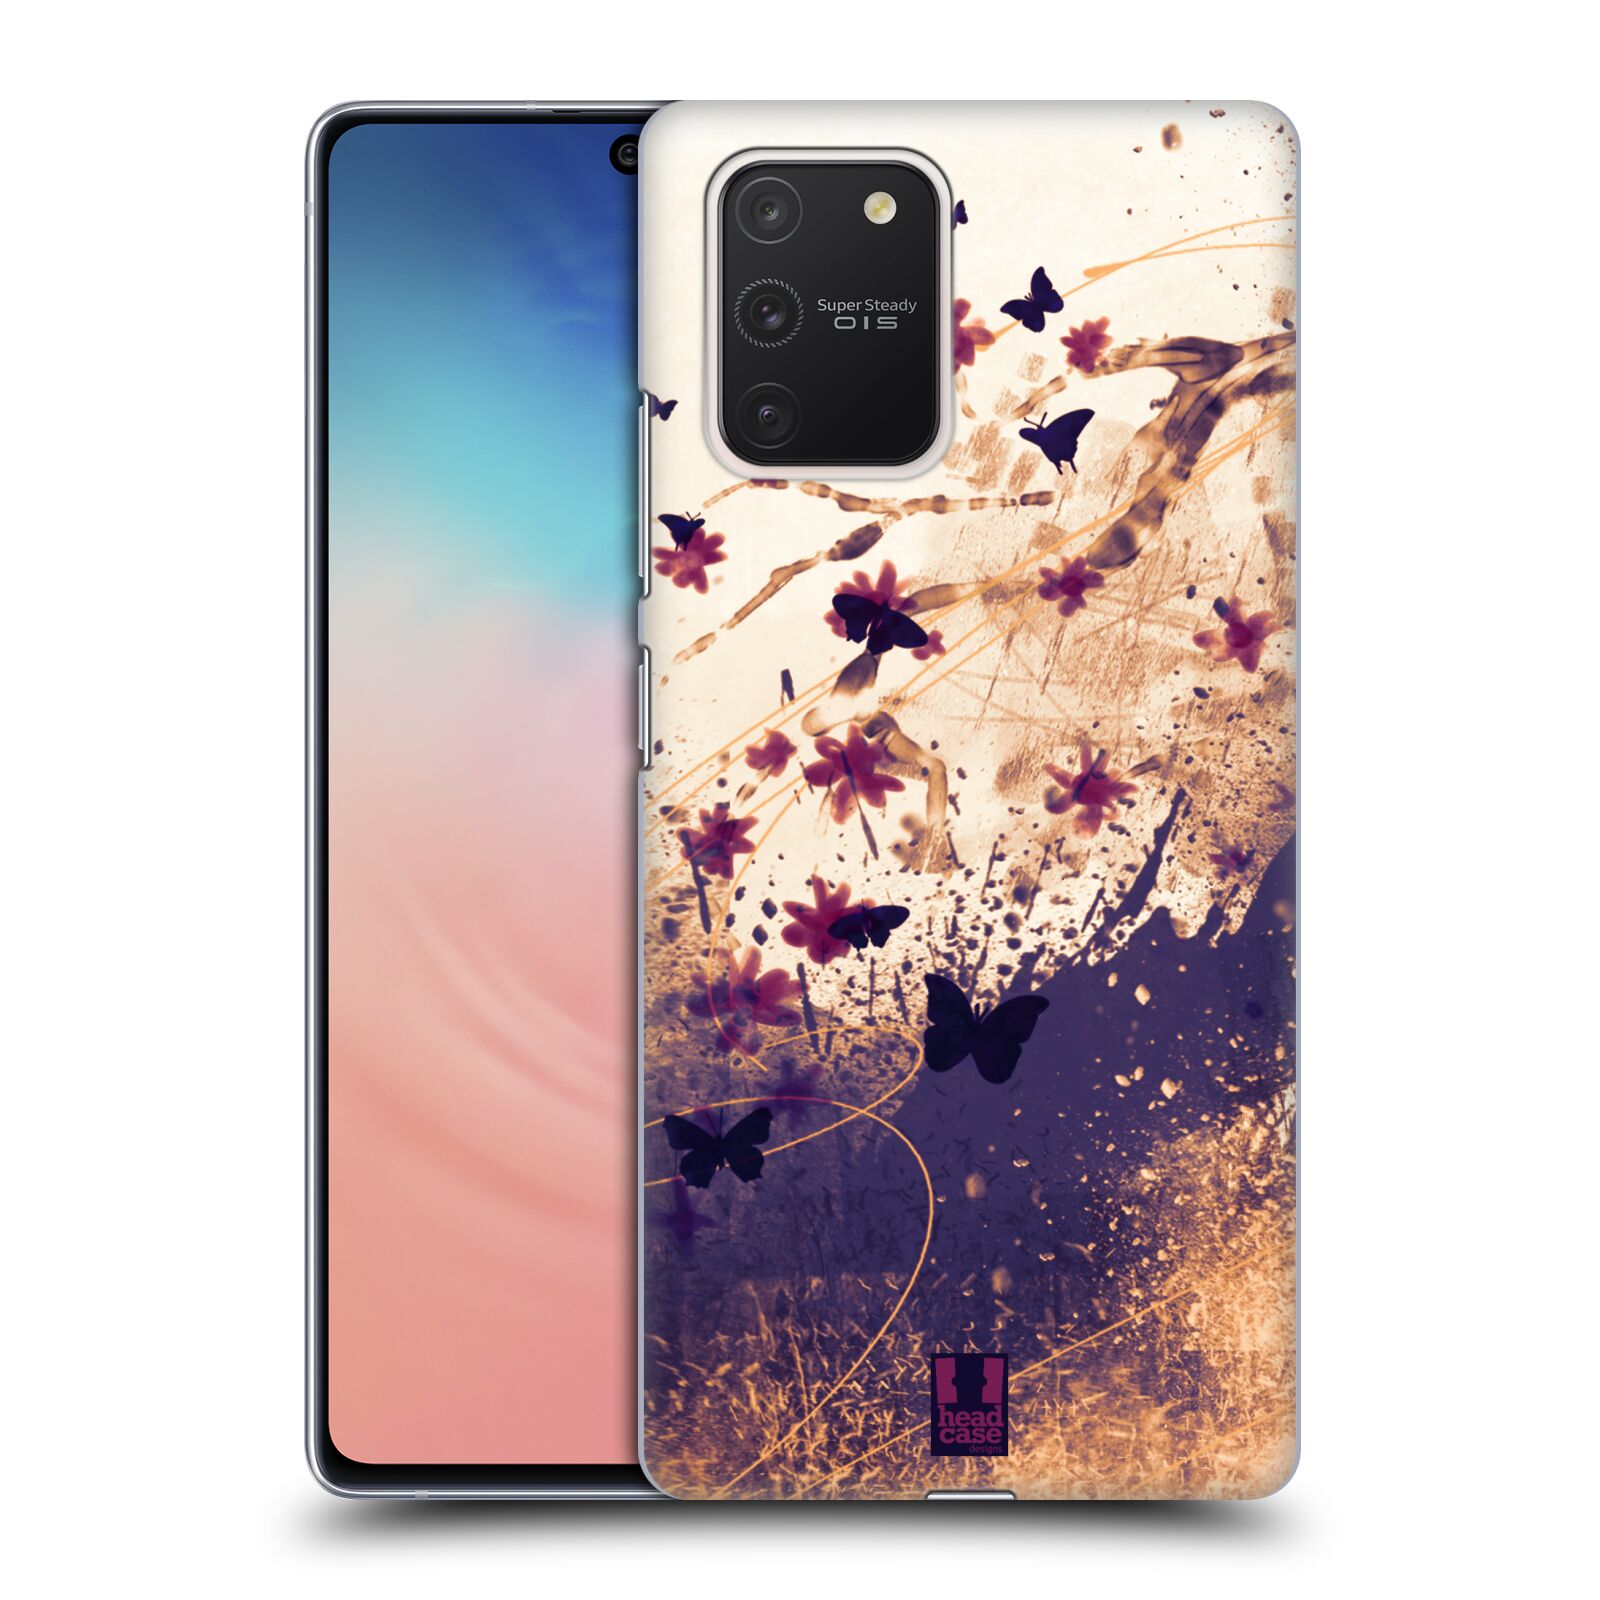 Zadní obal pro mobil Samsung Galaxy S10 LITE - HEAD CASE - Barevné květy a motýlci